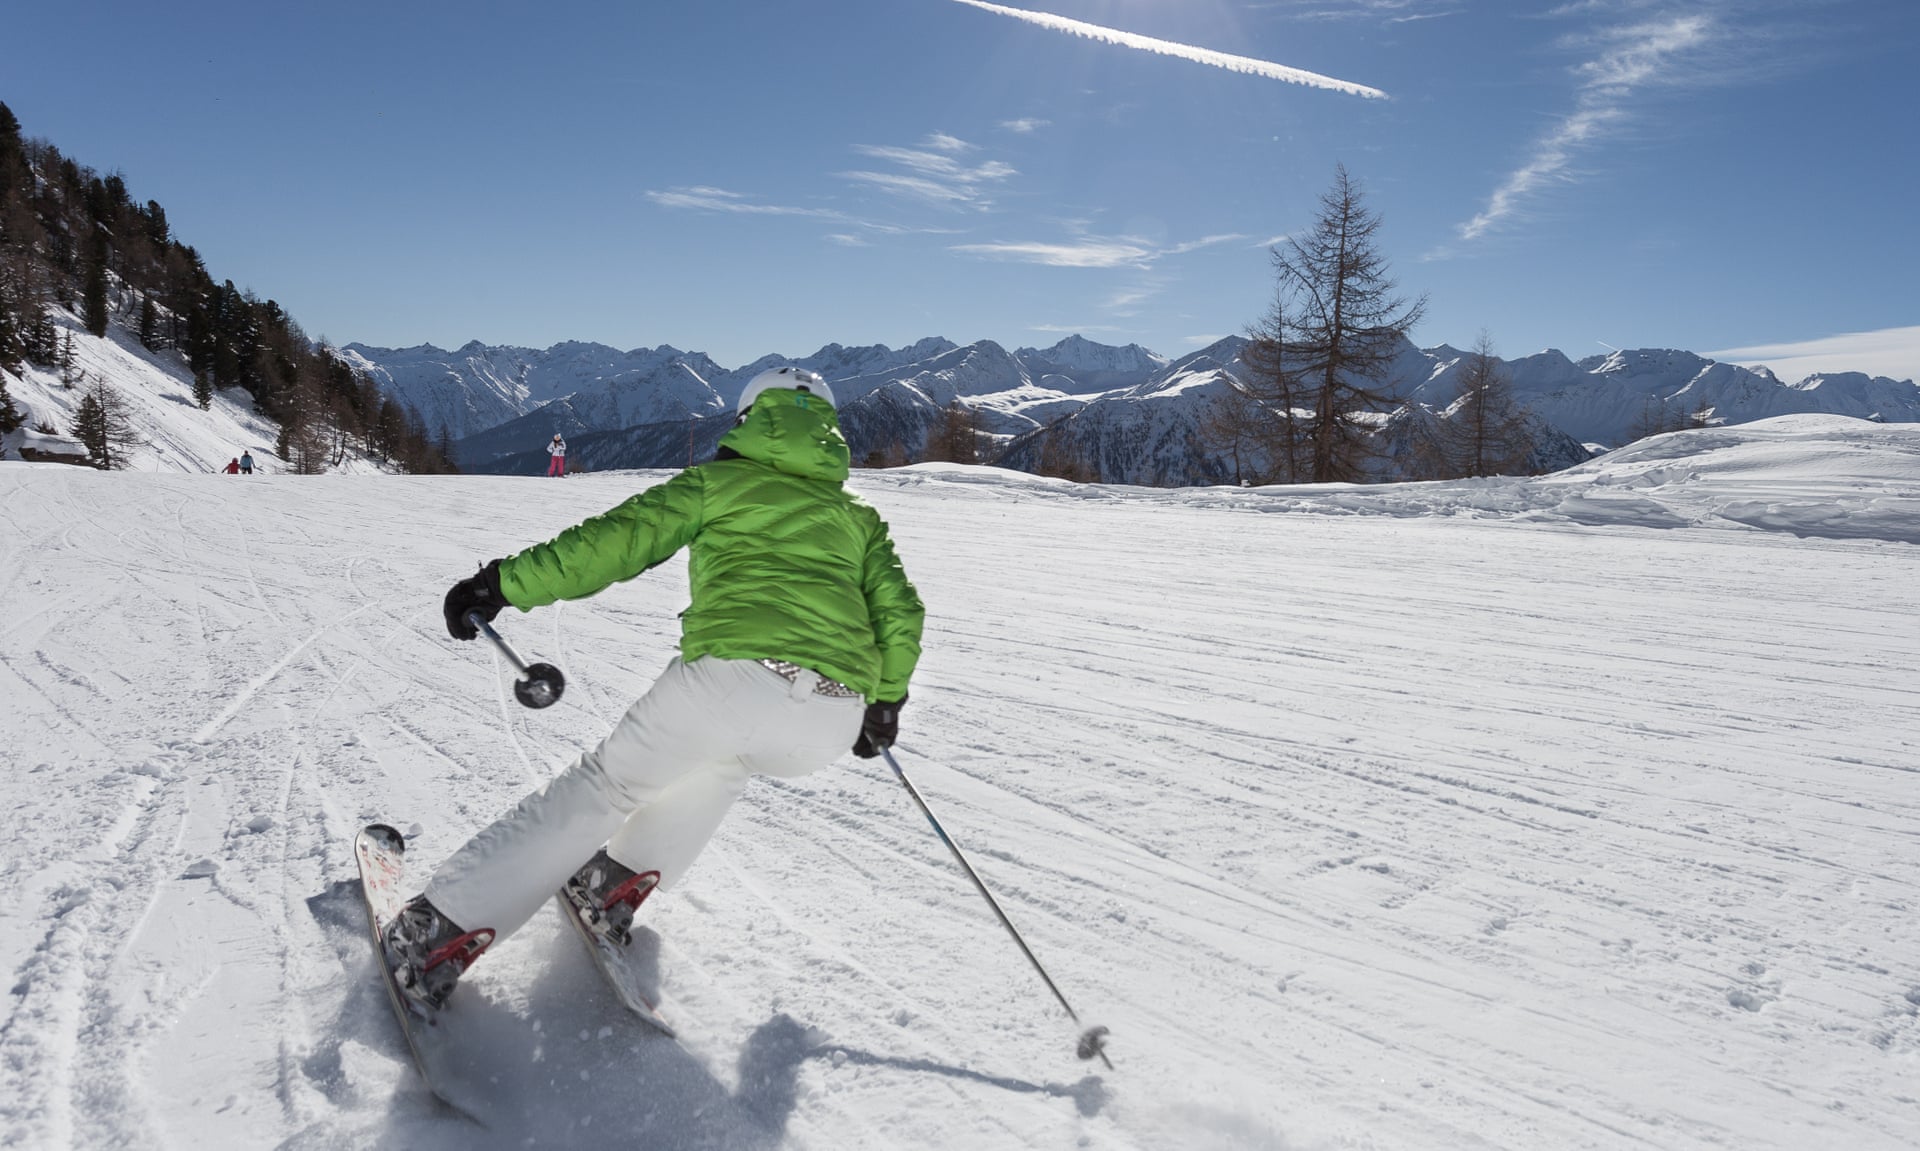 Italia Bangun Resor Ski Bebas Plastik Pertama di Eropa